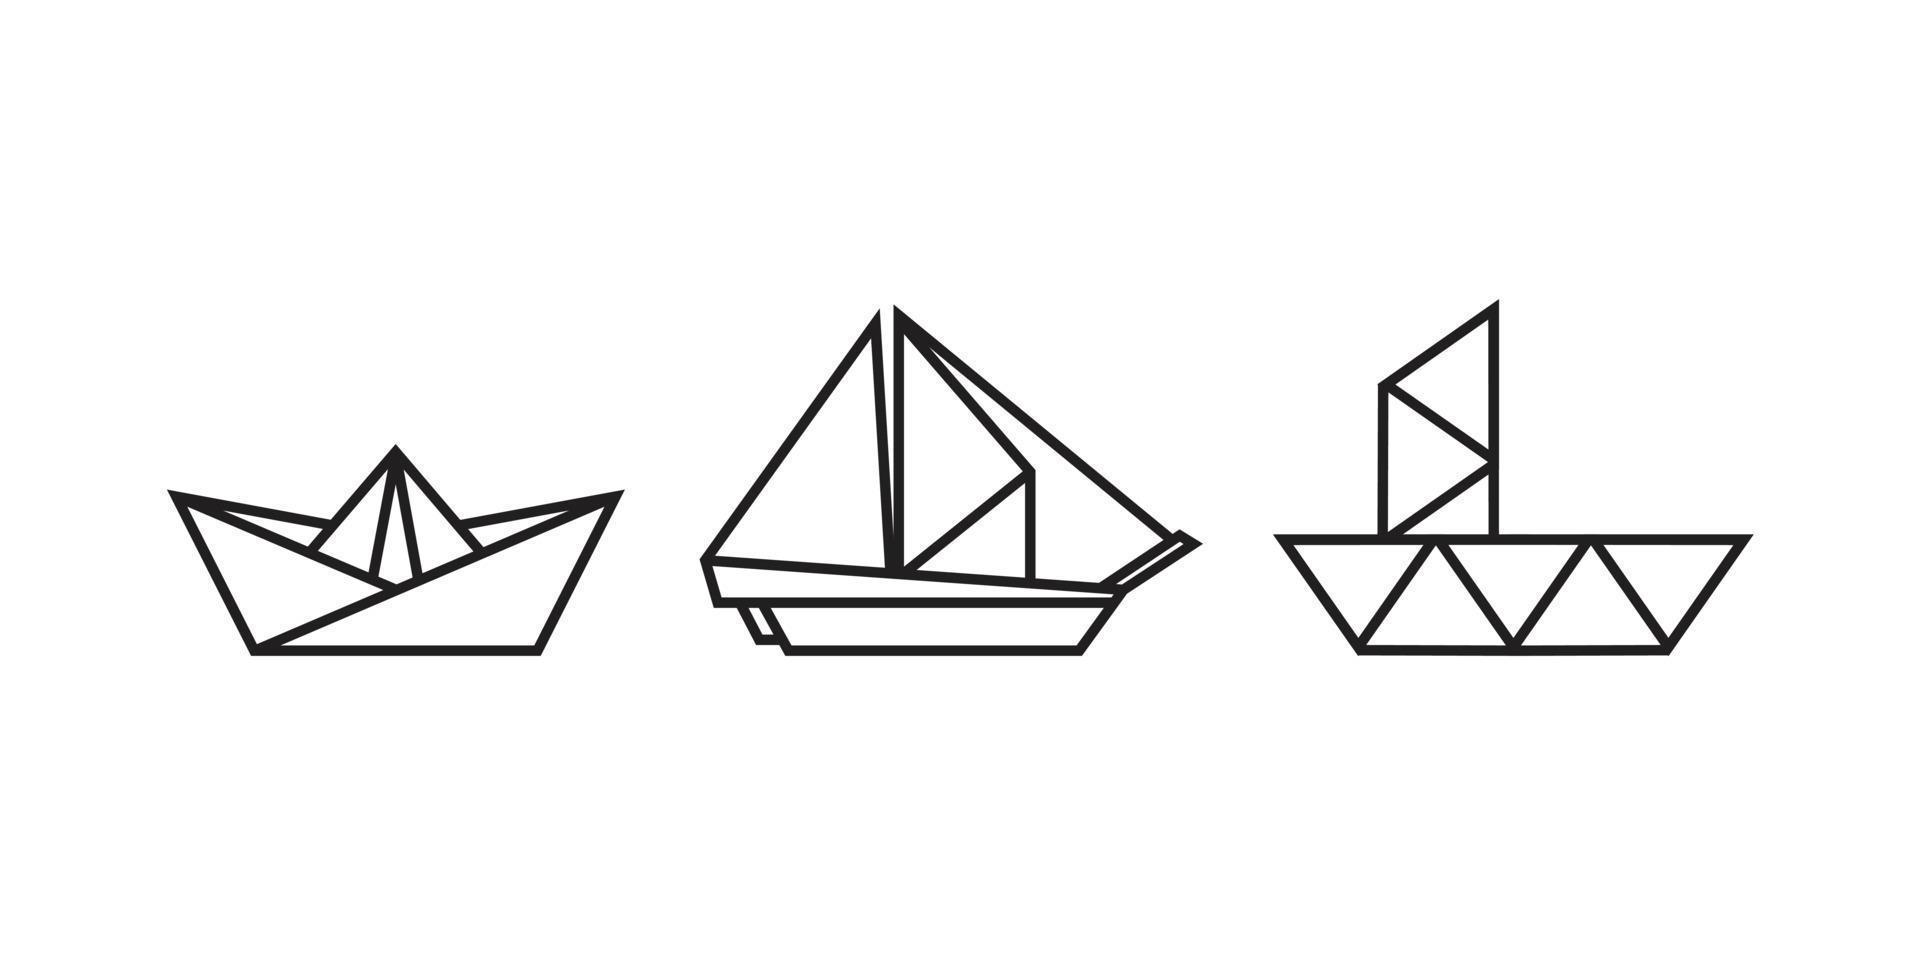 bootillustraties in origami-stijl vector